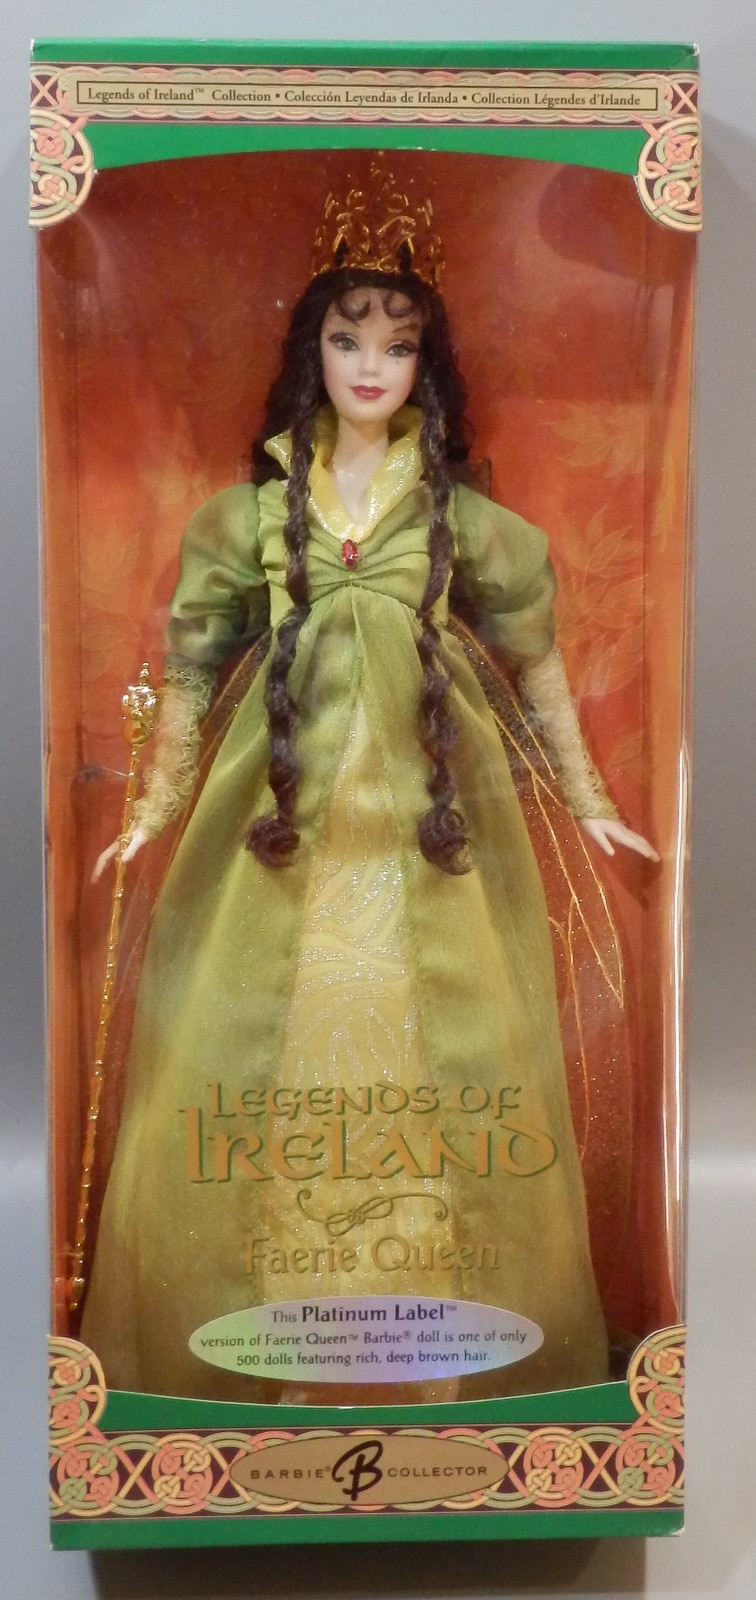 Hejse Observatory Korridor Mattel - Barbie collector . Legends of Ireland Fairy Queen Platinum Label  ver G7916 | Mandarake Online Shop